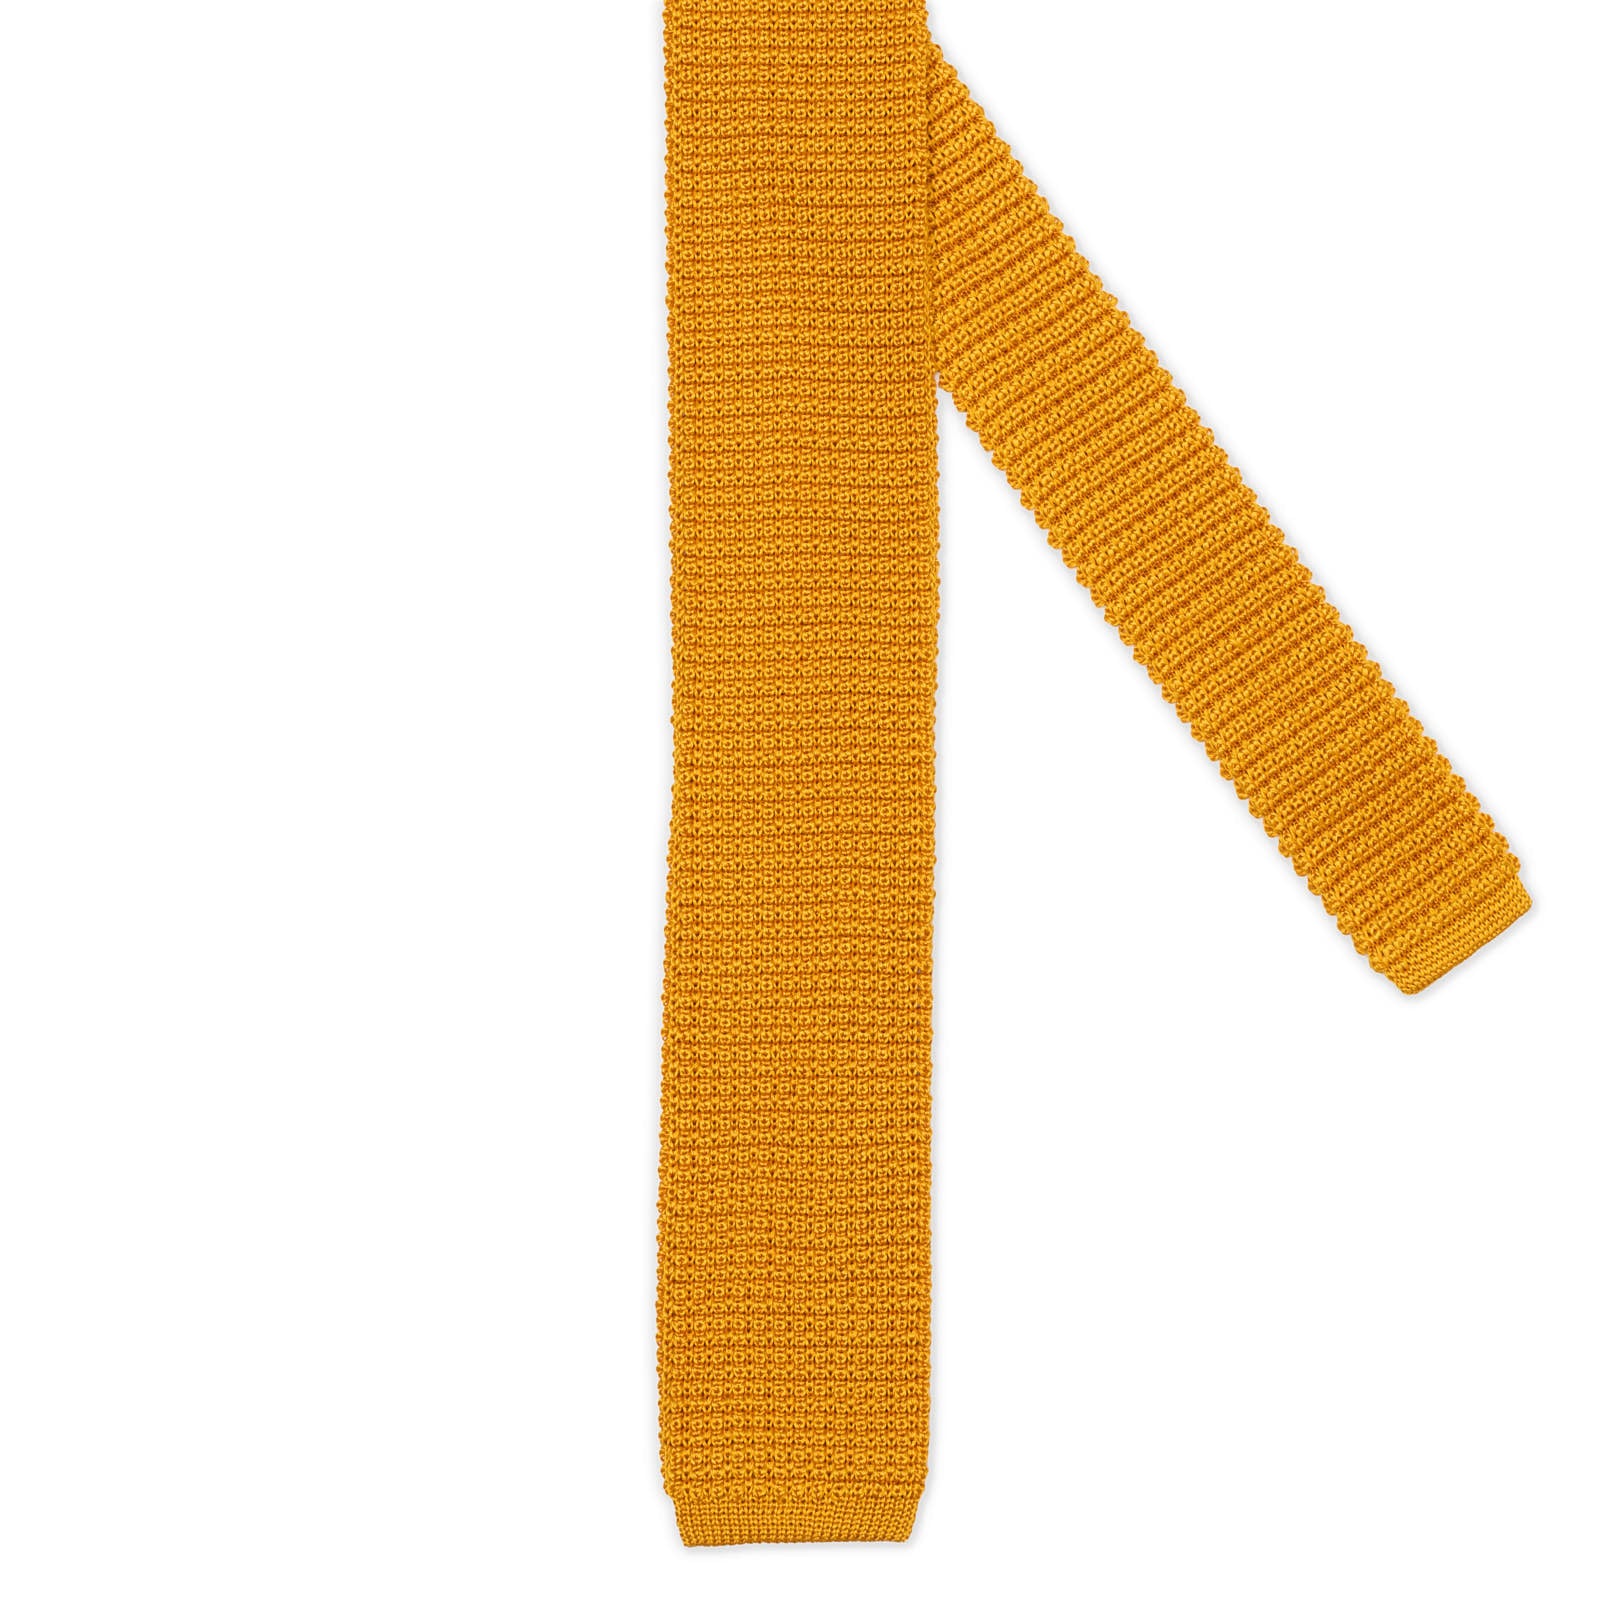 MATTABISCH Orange Silk Knit Tie NEW